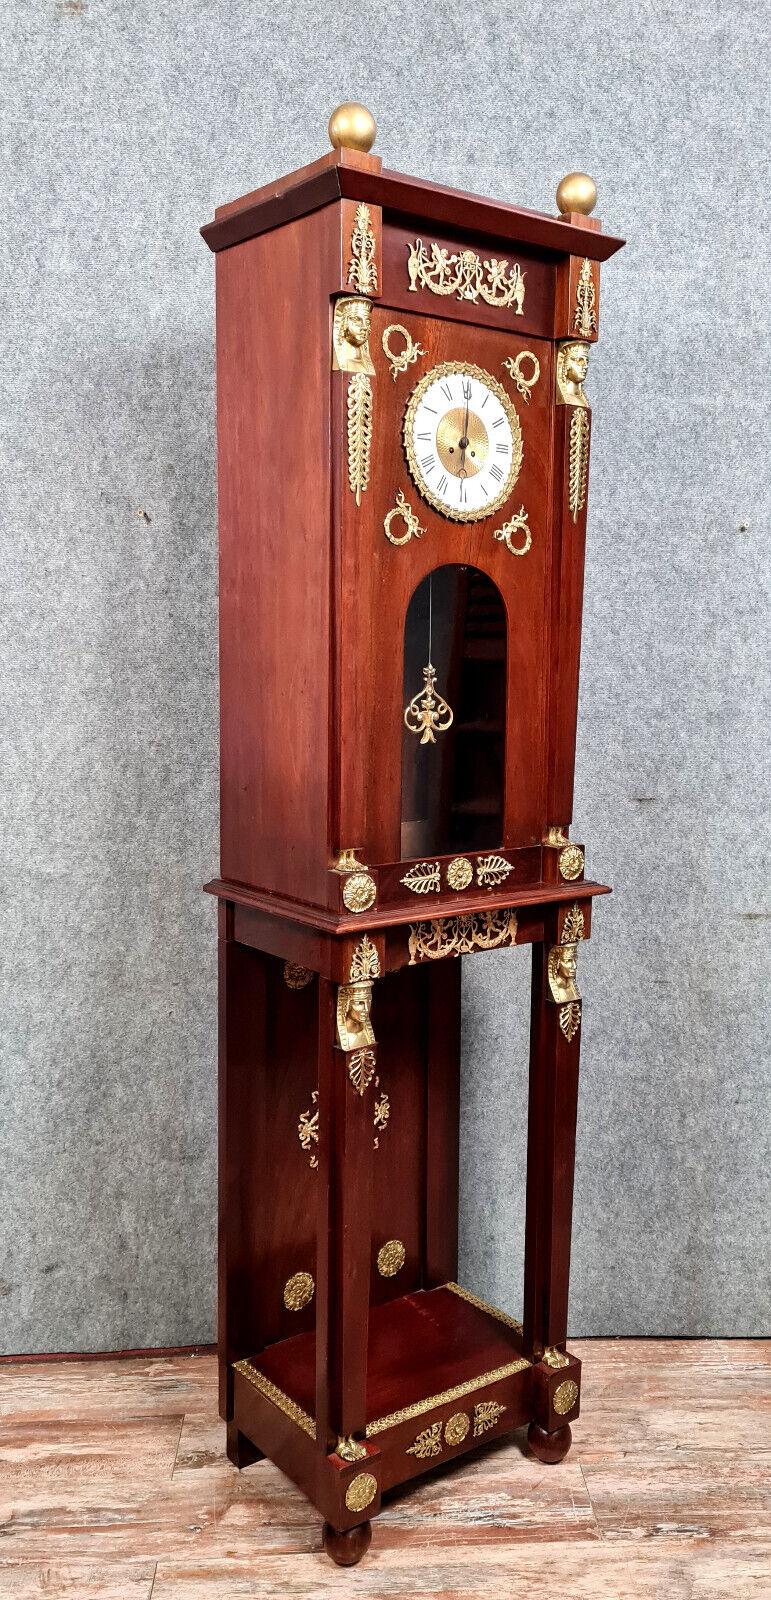 Eleva la decoración de tu hogar con este impresionante reloj regulador de parqué de estilo Imperio, digno de museo, fabricado en lujosa madera de caoba. Esta impresionante pieza, que data aproximadamente de 1880, presenta abundantes ornamentos de